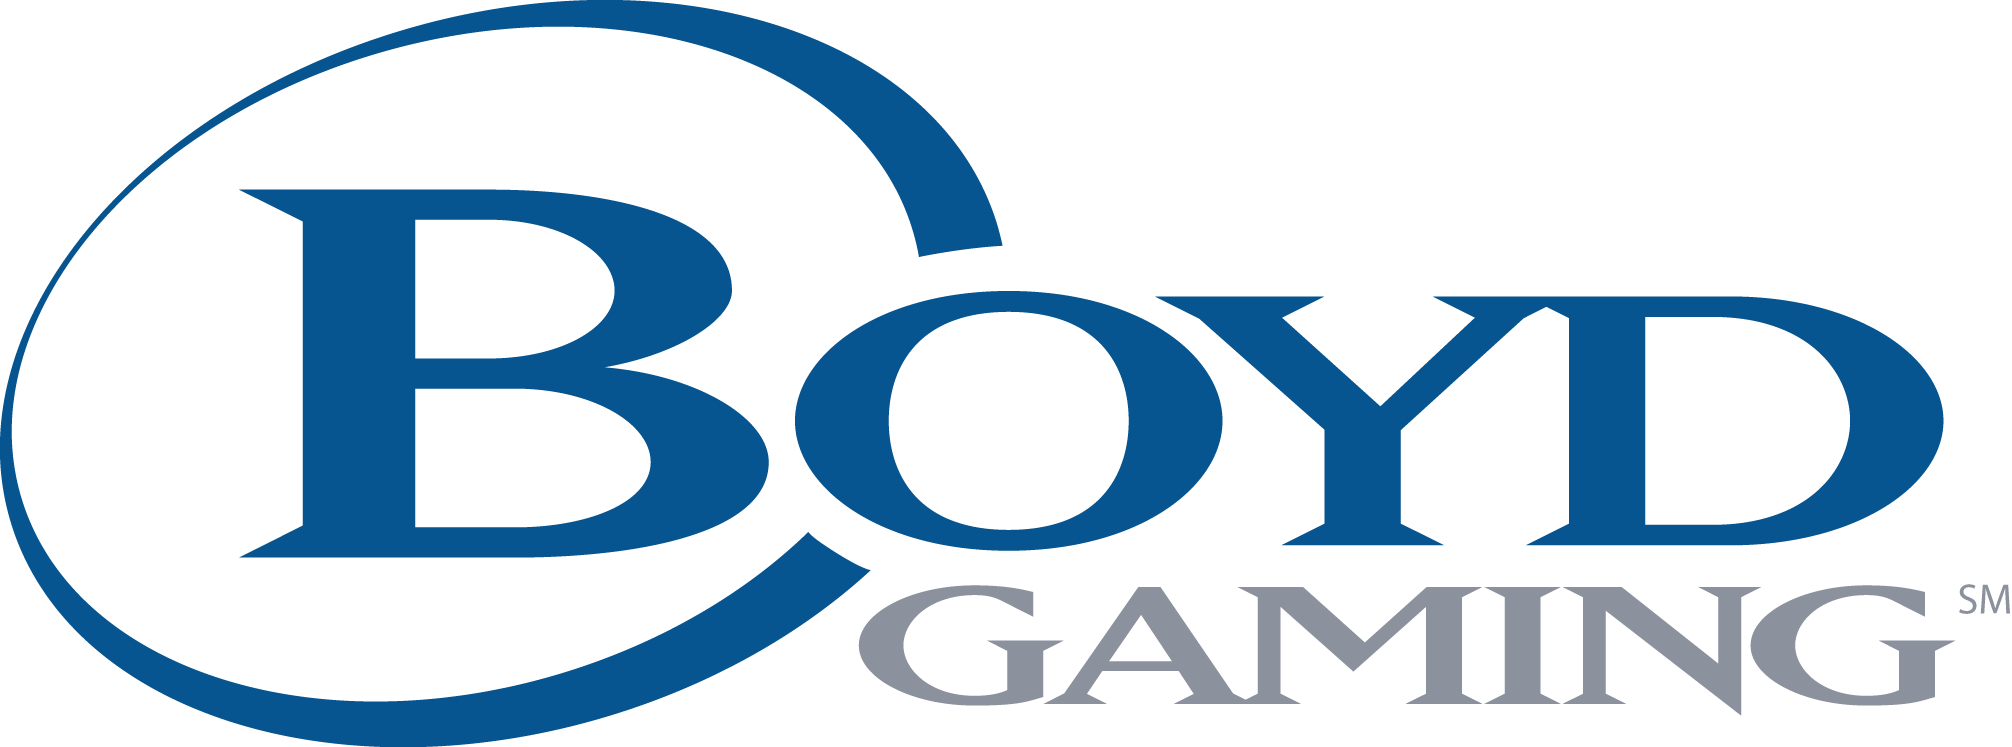 Boyd Gaming